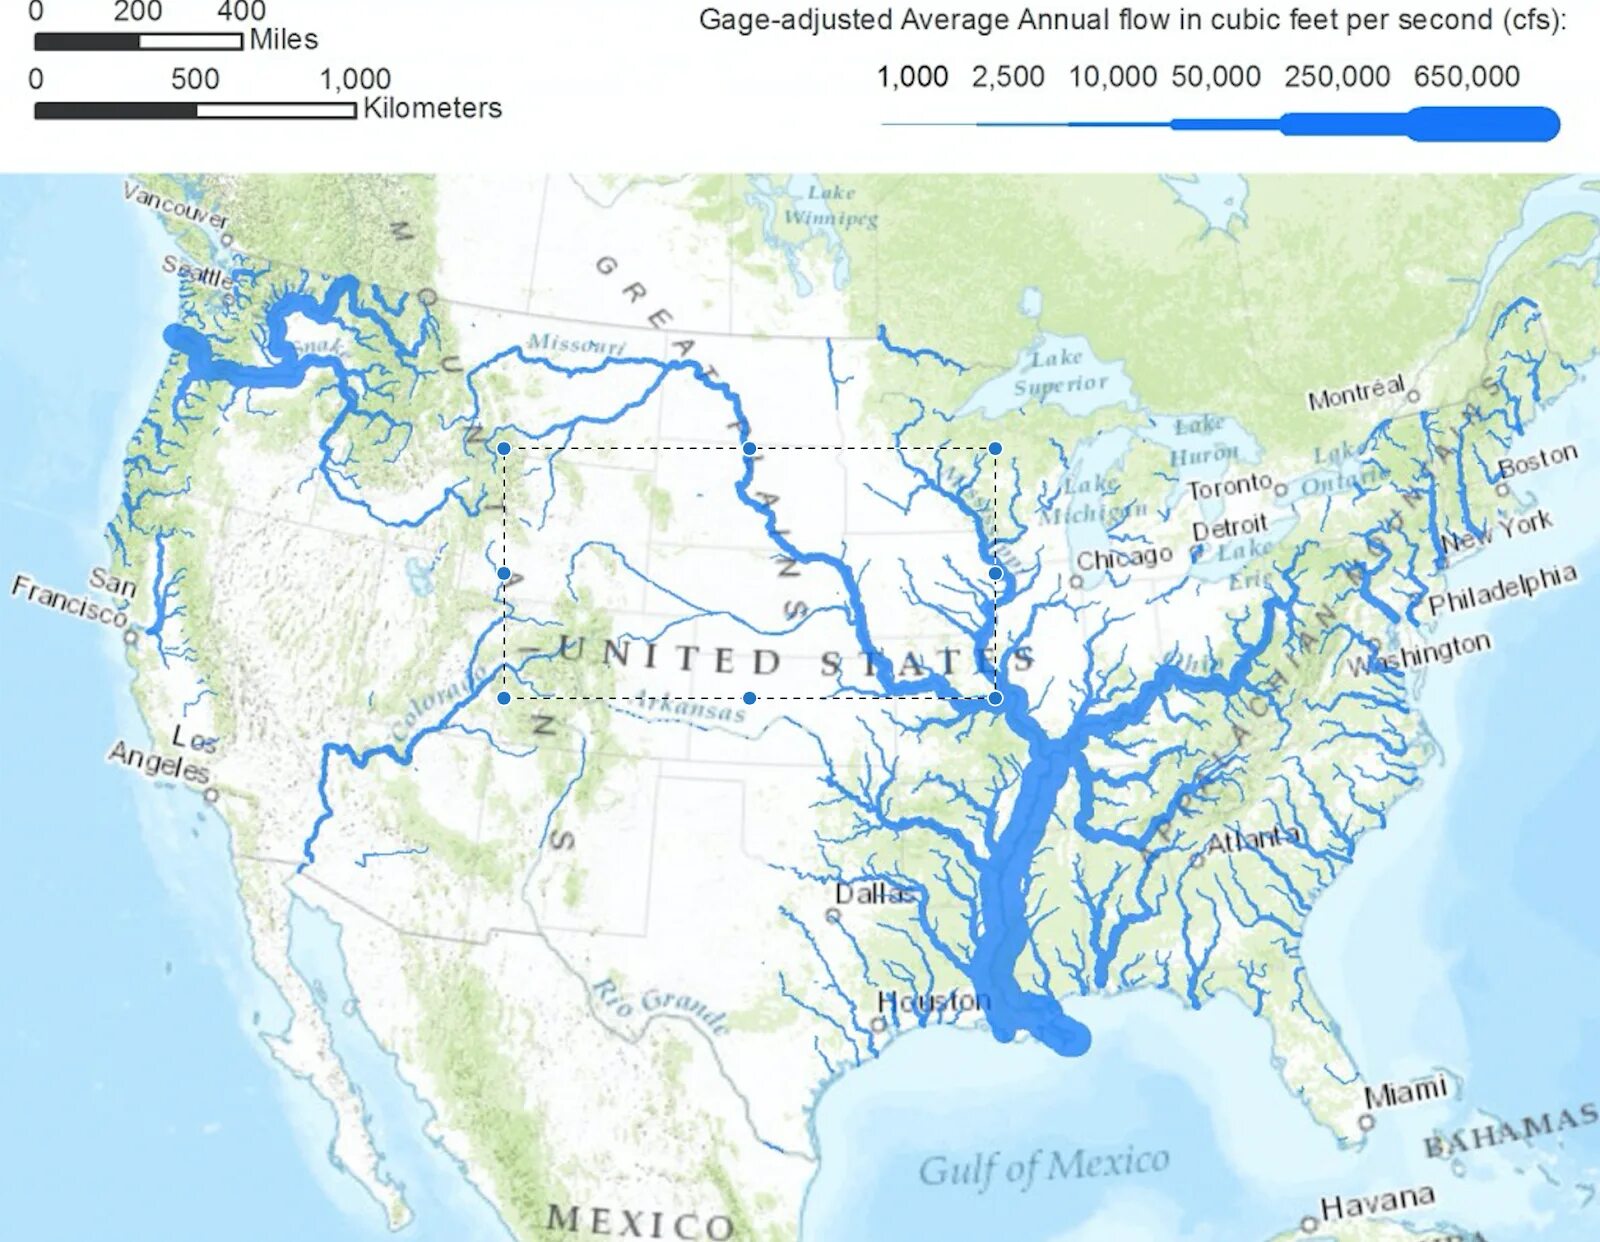 Hudson river map. Бассейны рек Северной Америки на карте. Крупнейшие реки и озёра Северной Америки на карте. Бассейн реки Миссисипи на карте Северной Америки. Северная Америка река Миссисипи.